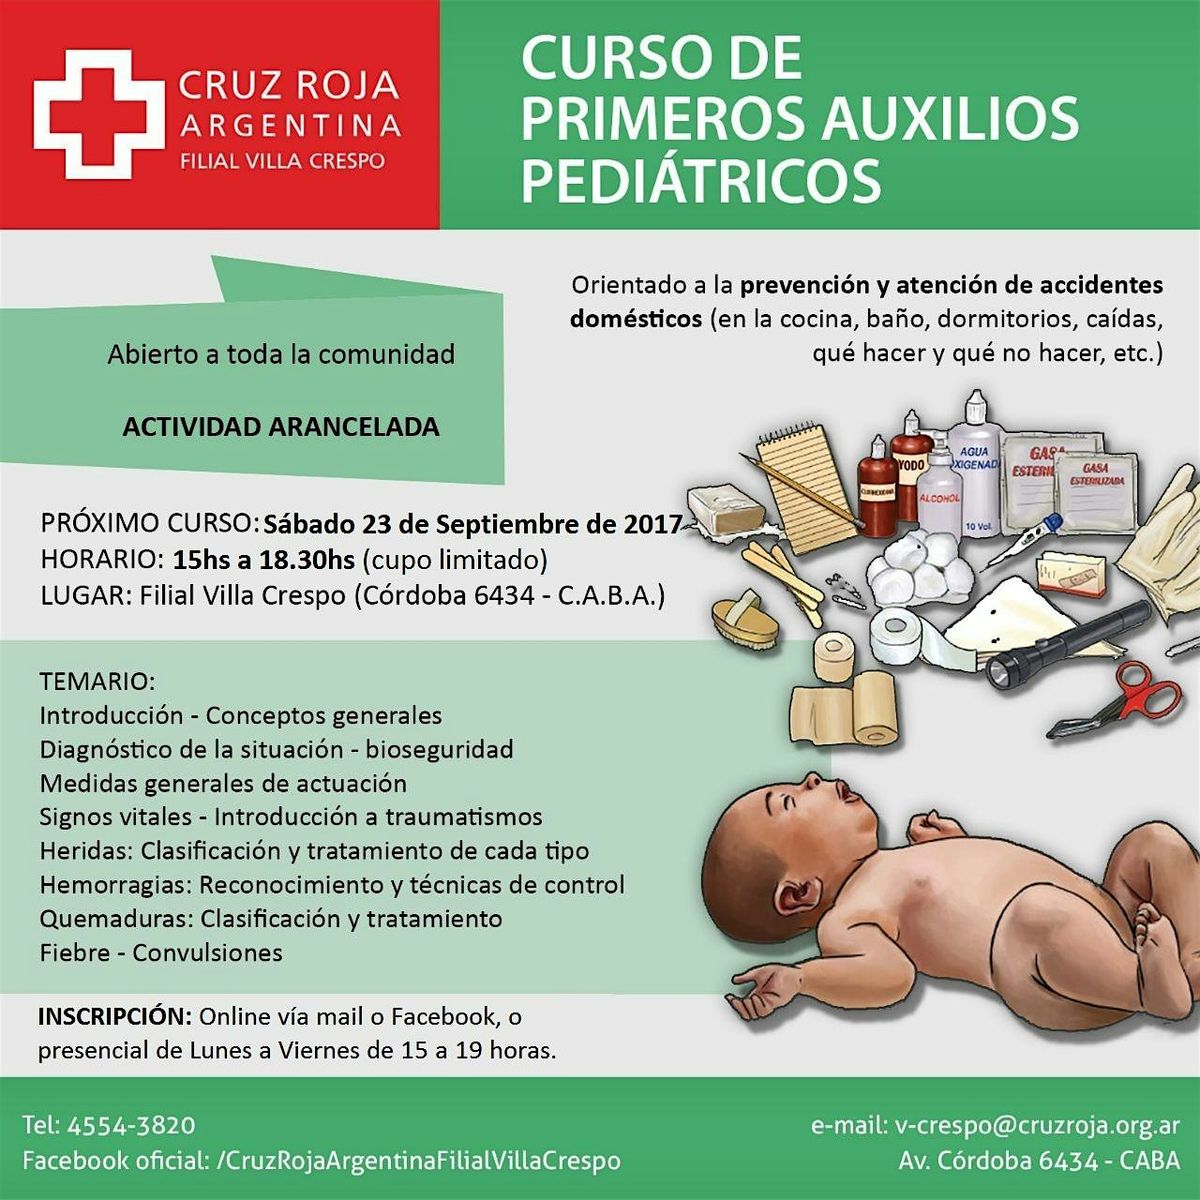 Curso de RCP en Cruz Roja (lunes 22-07-24) 18 a 22 hs - Duraci\u00f3n 4 hs.